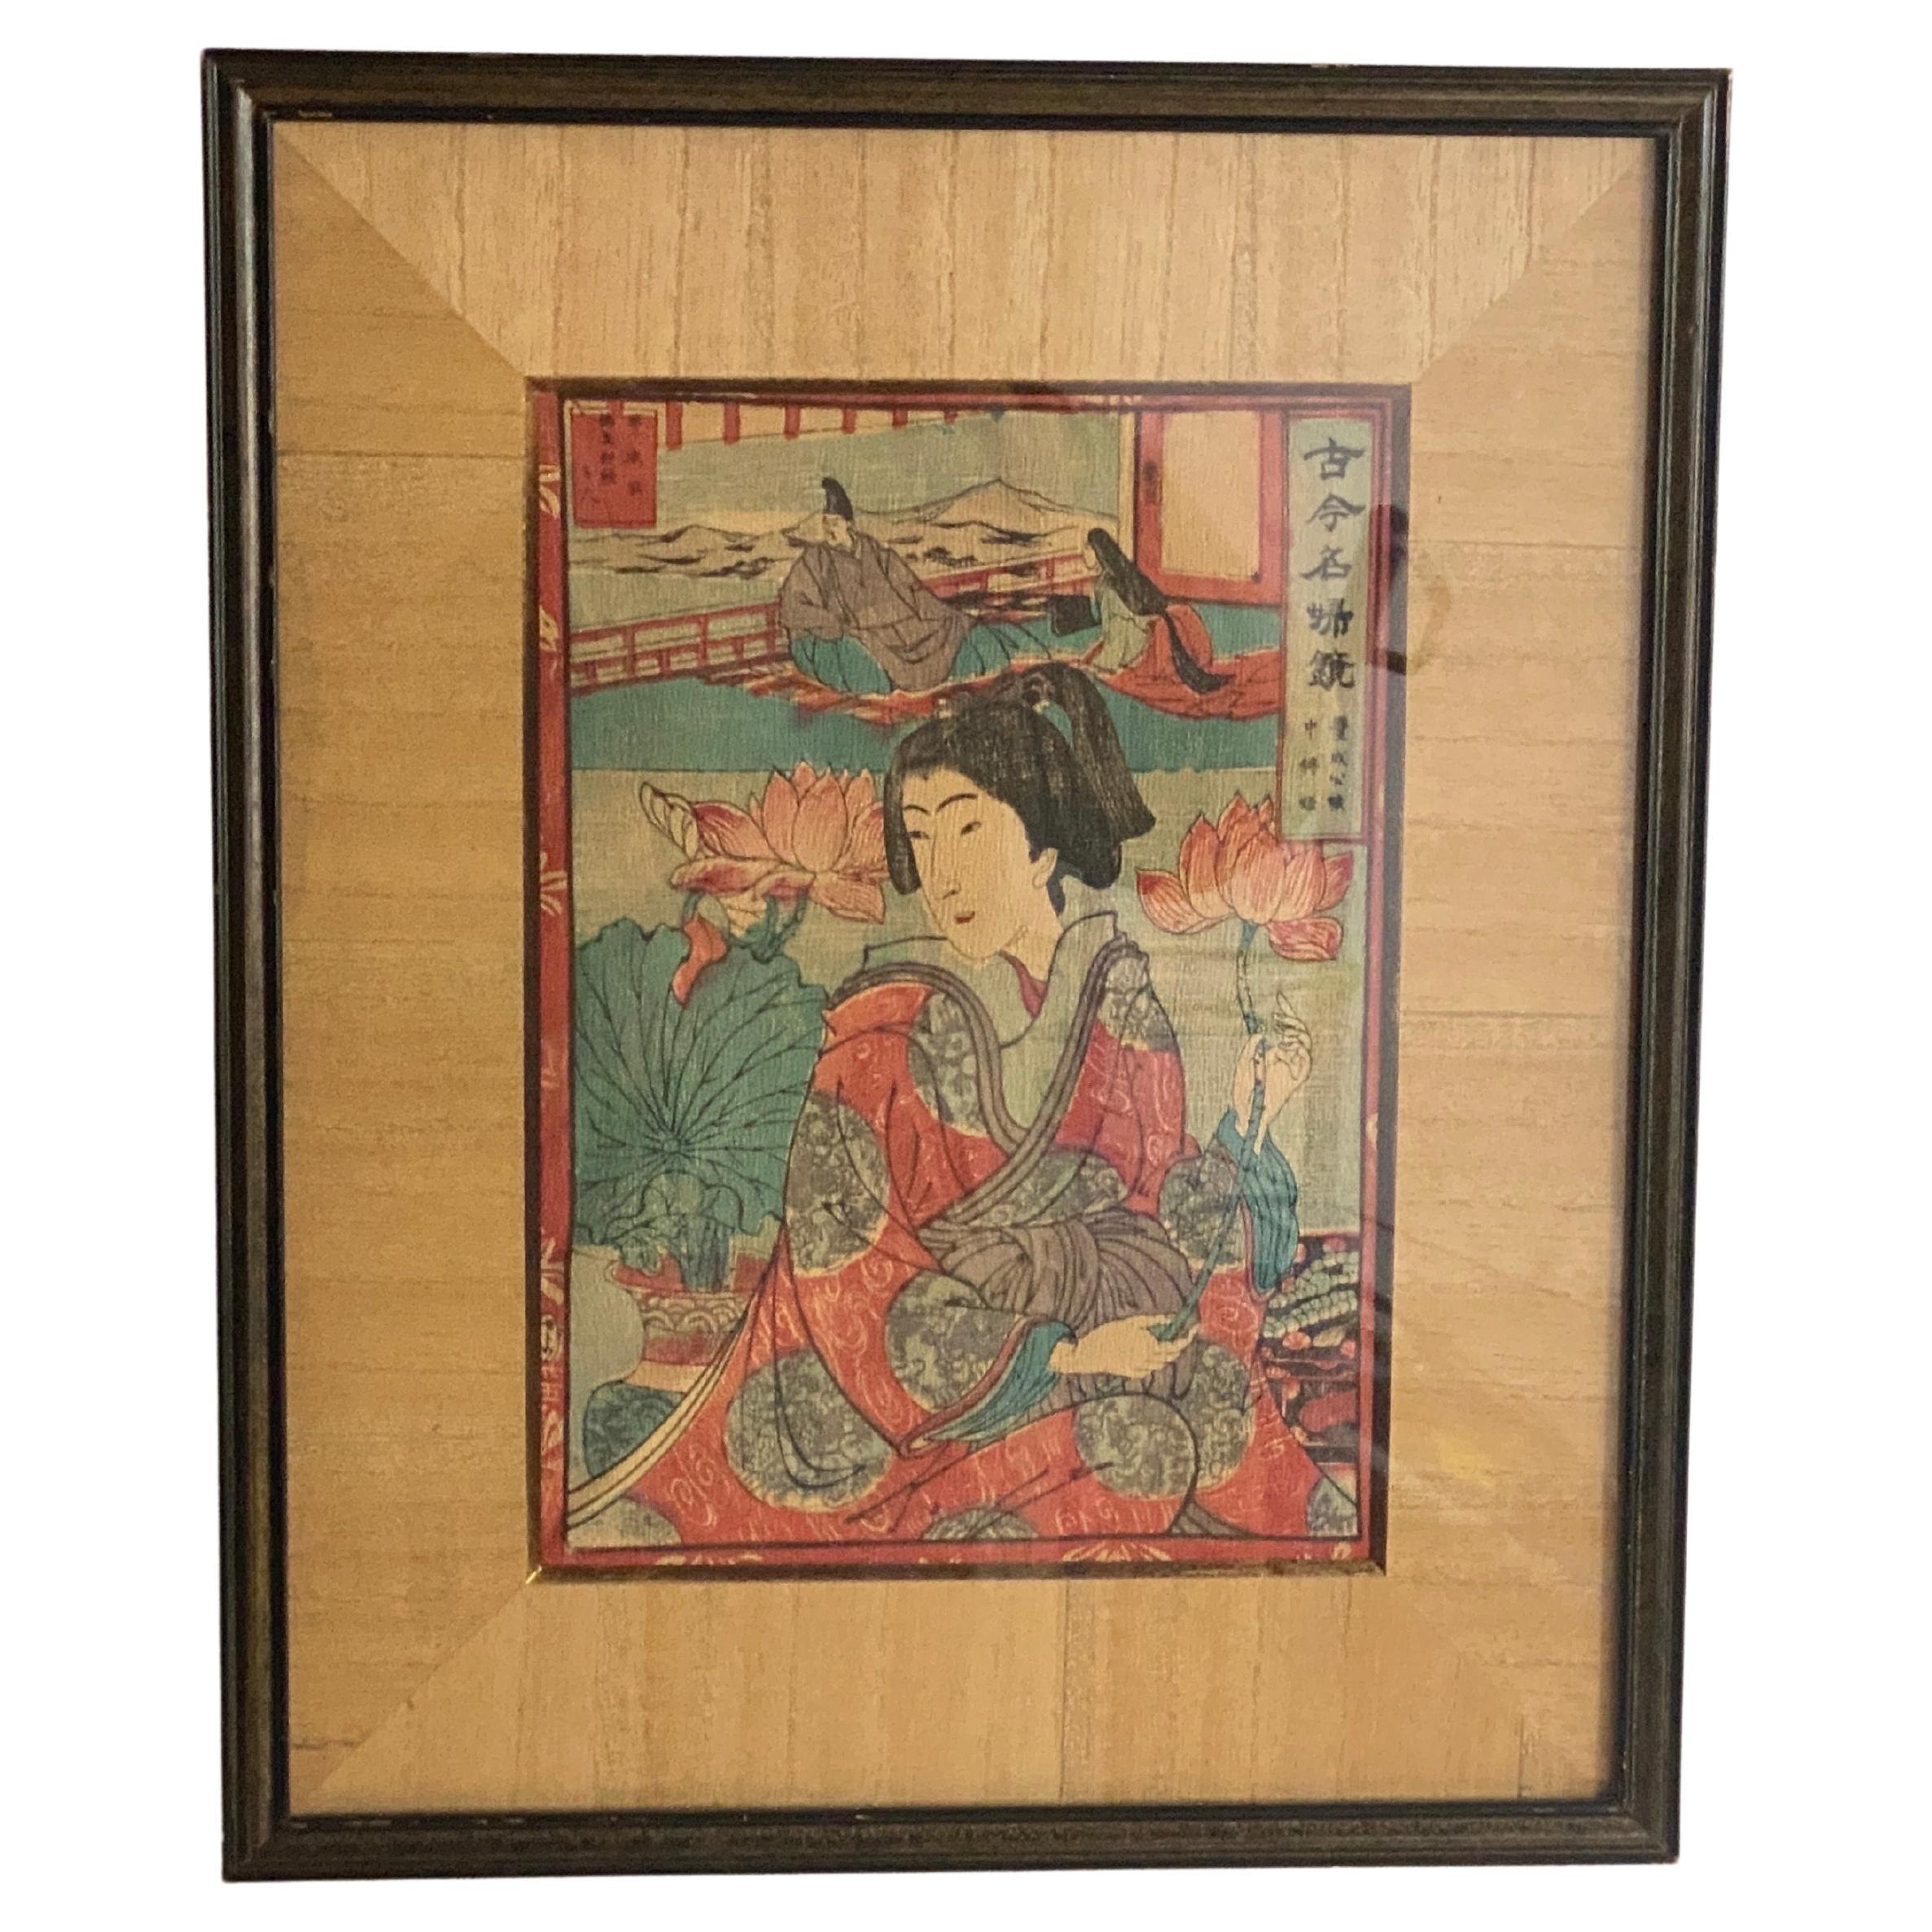 Original japanischer Farbholzschnitt eines japanischen Künstlers aus dem 19.